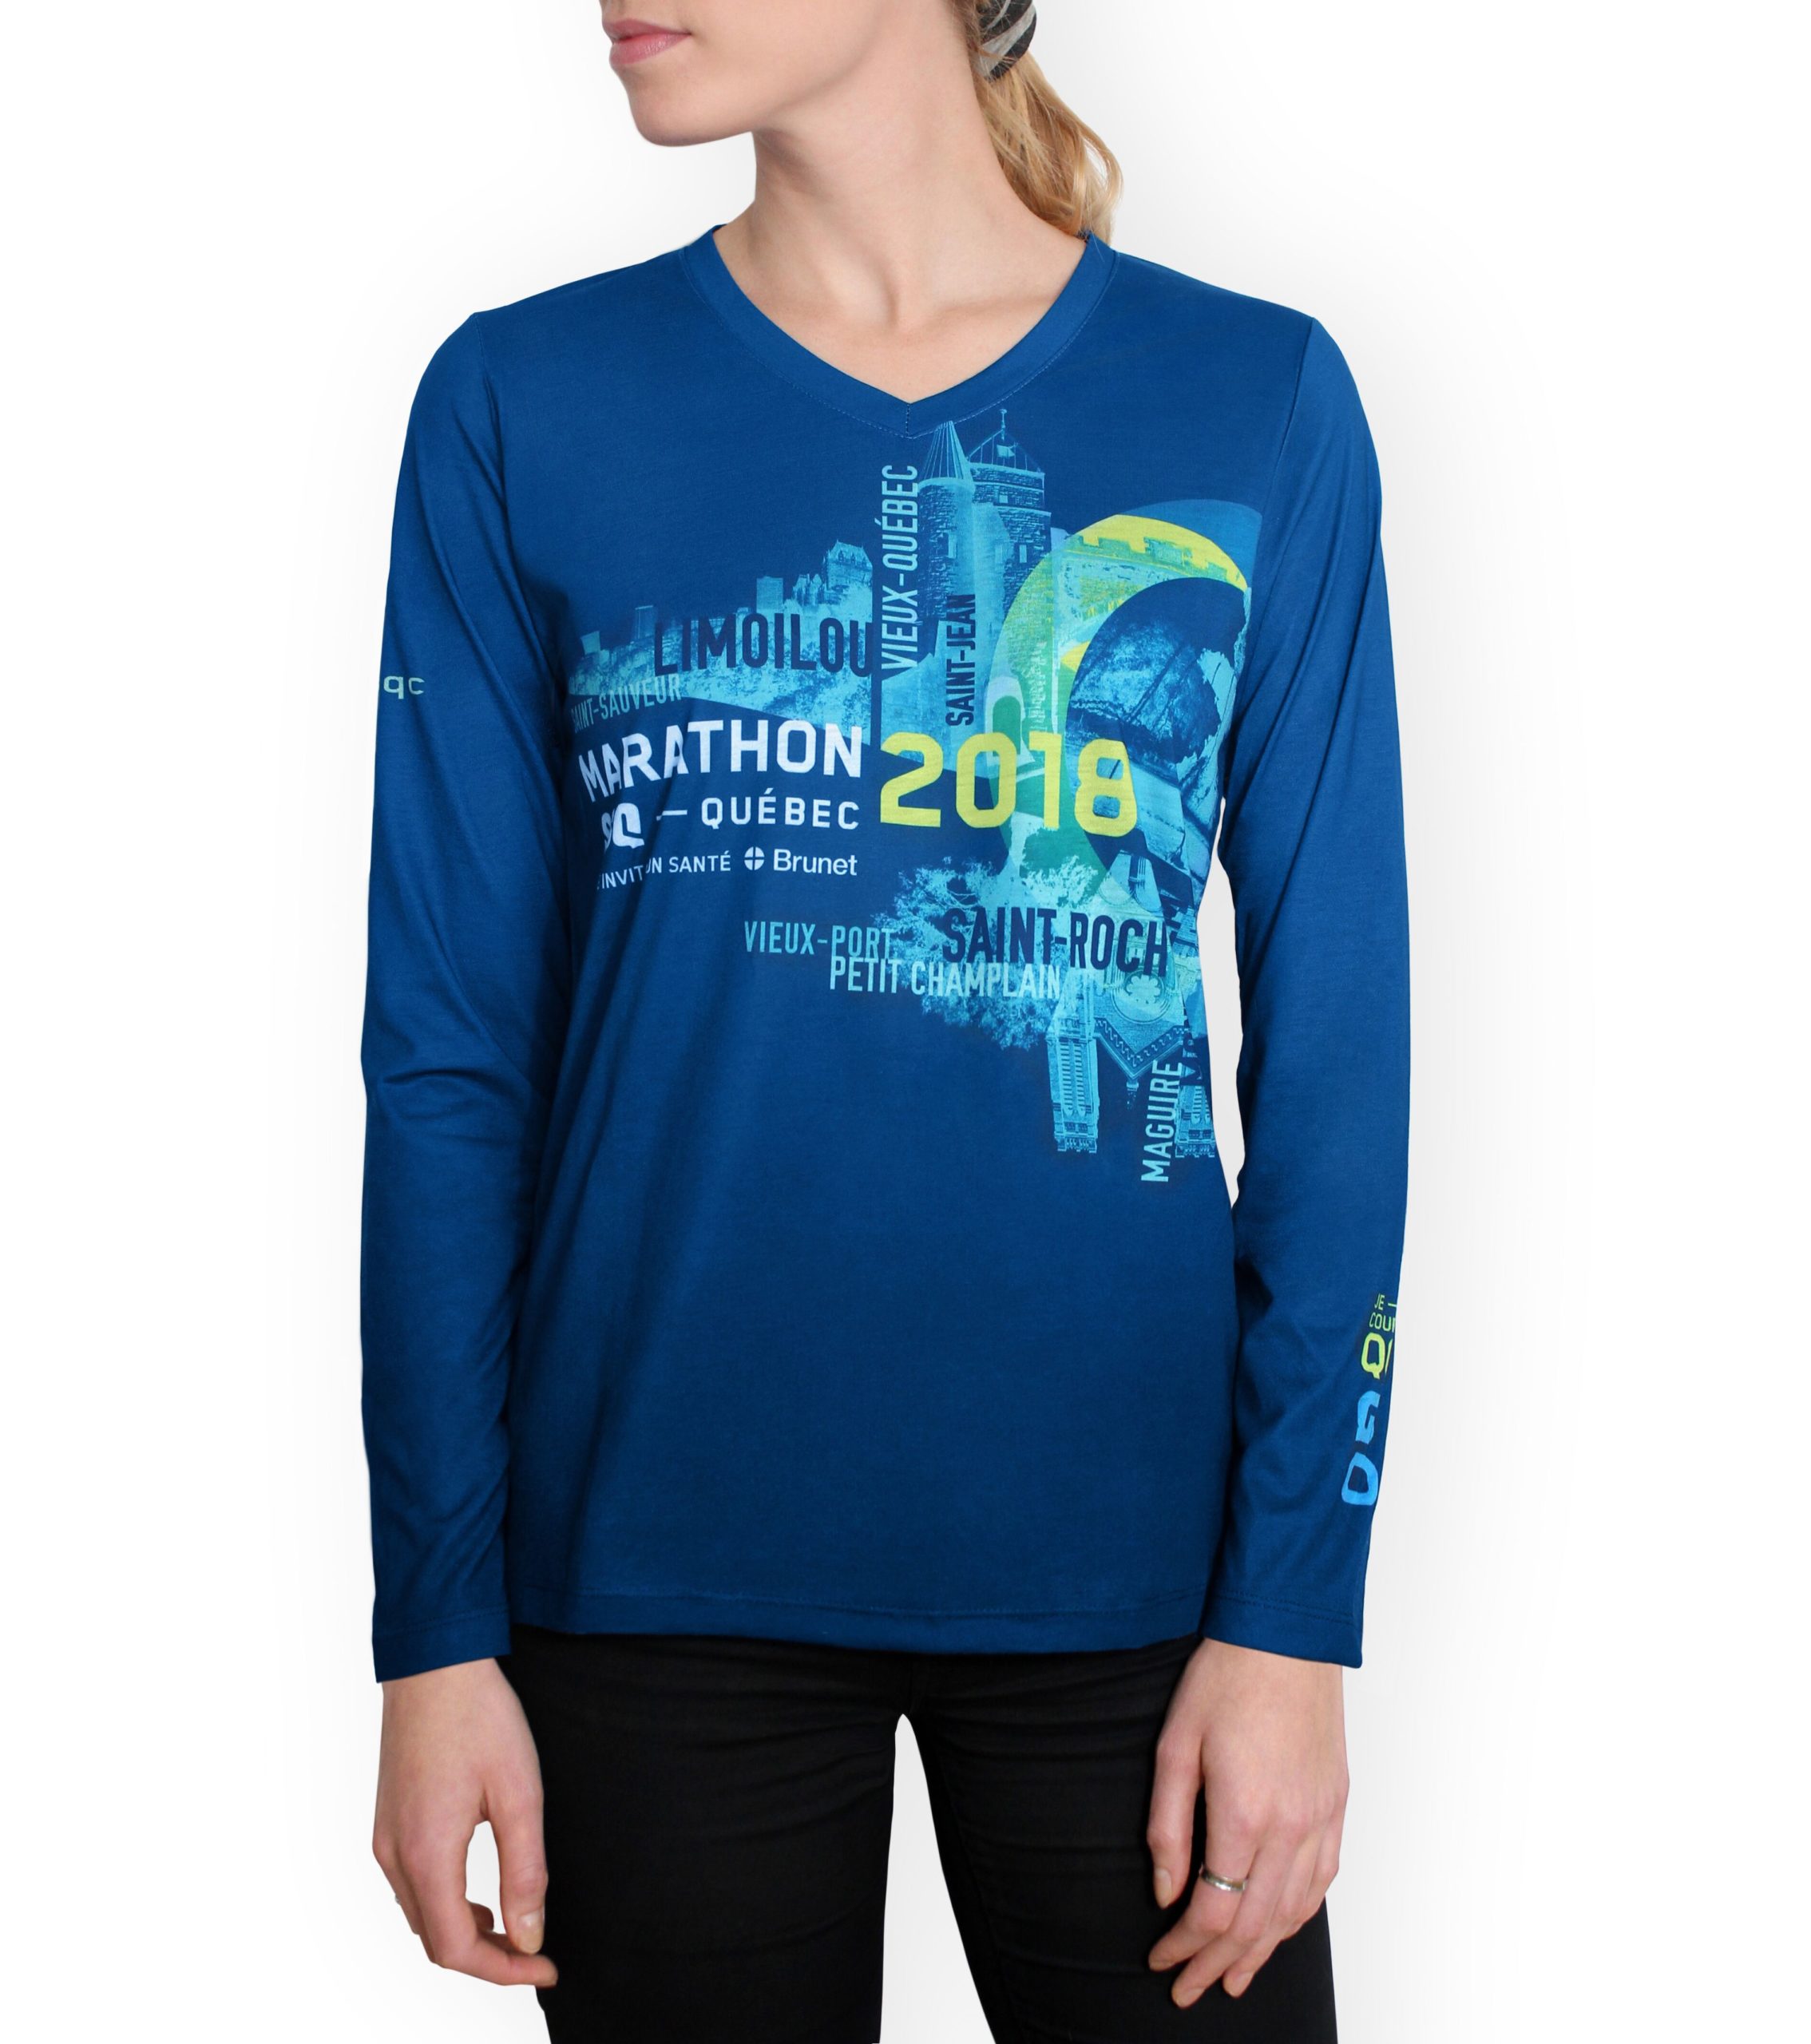 t-shirt du marathon ssq de québec